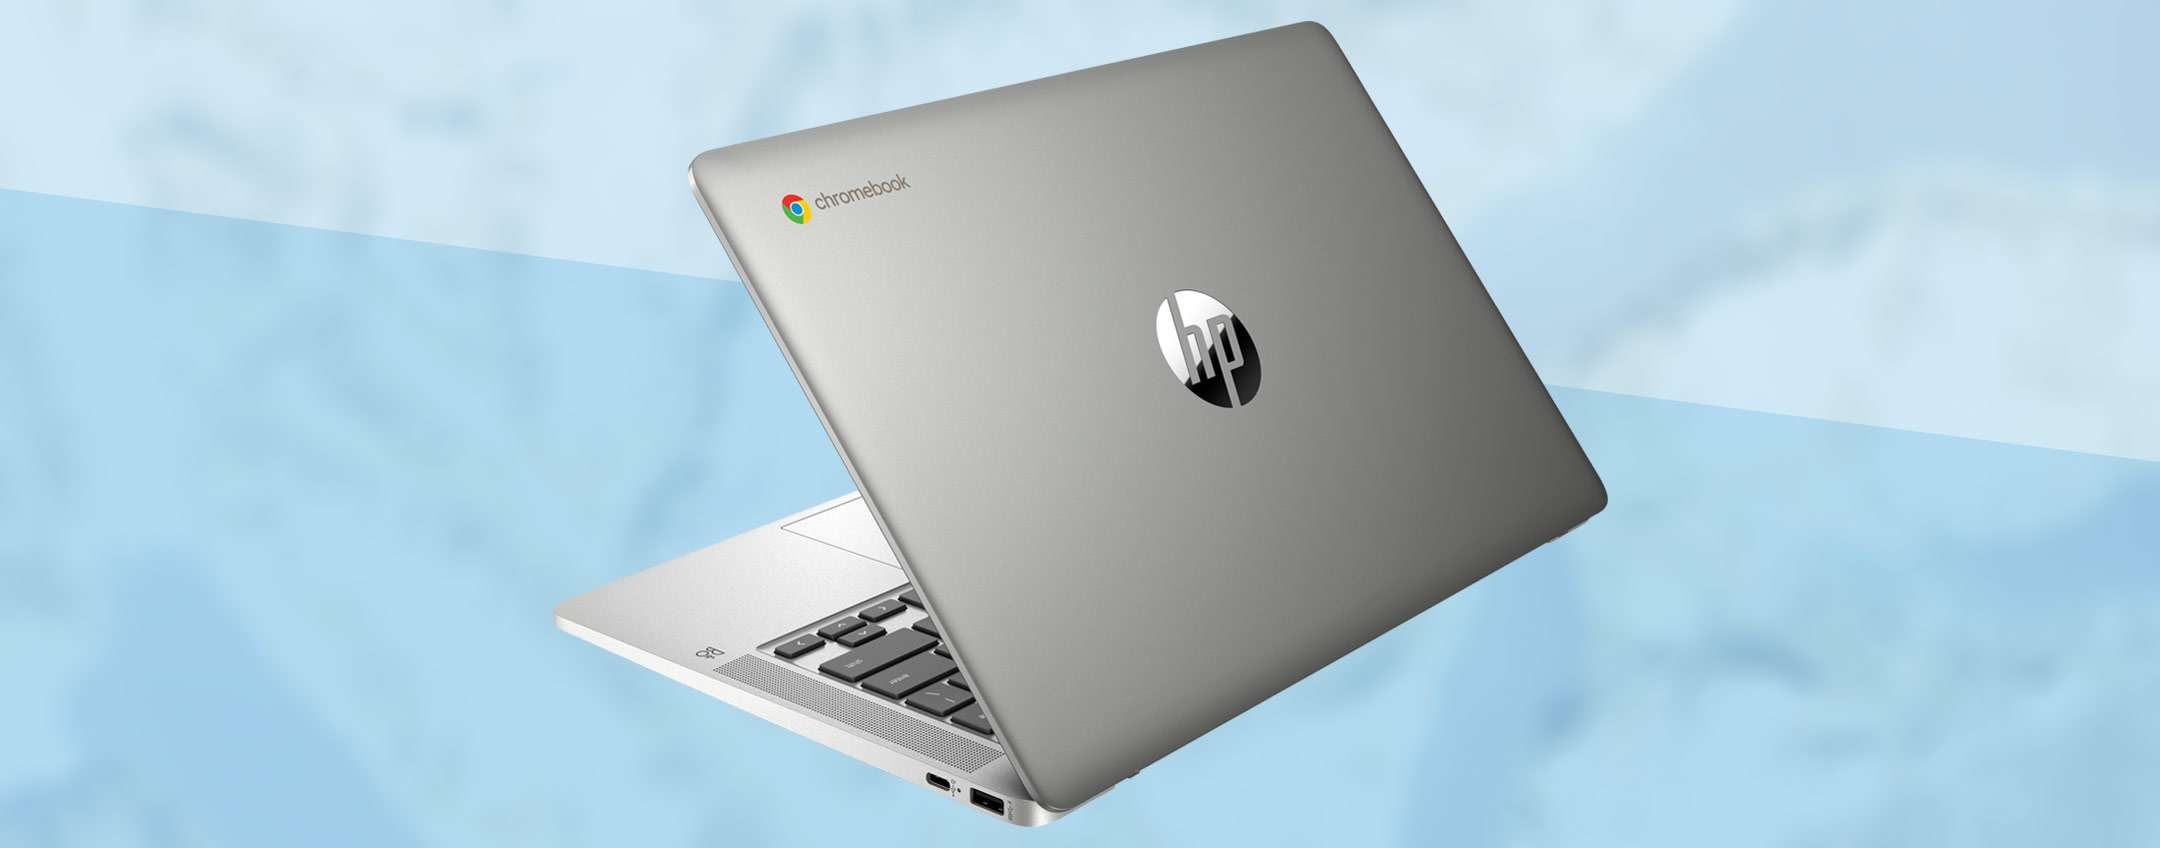 Un Chromebook a Natale: quello HP costa 100€ meno